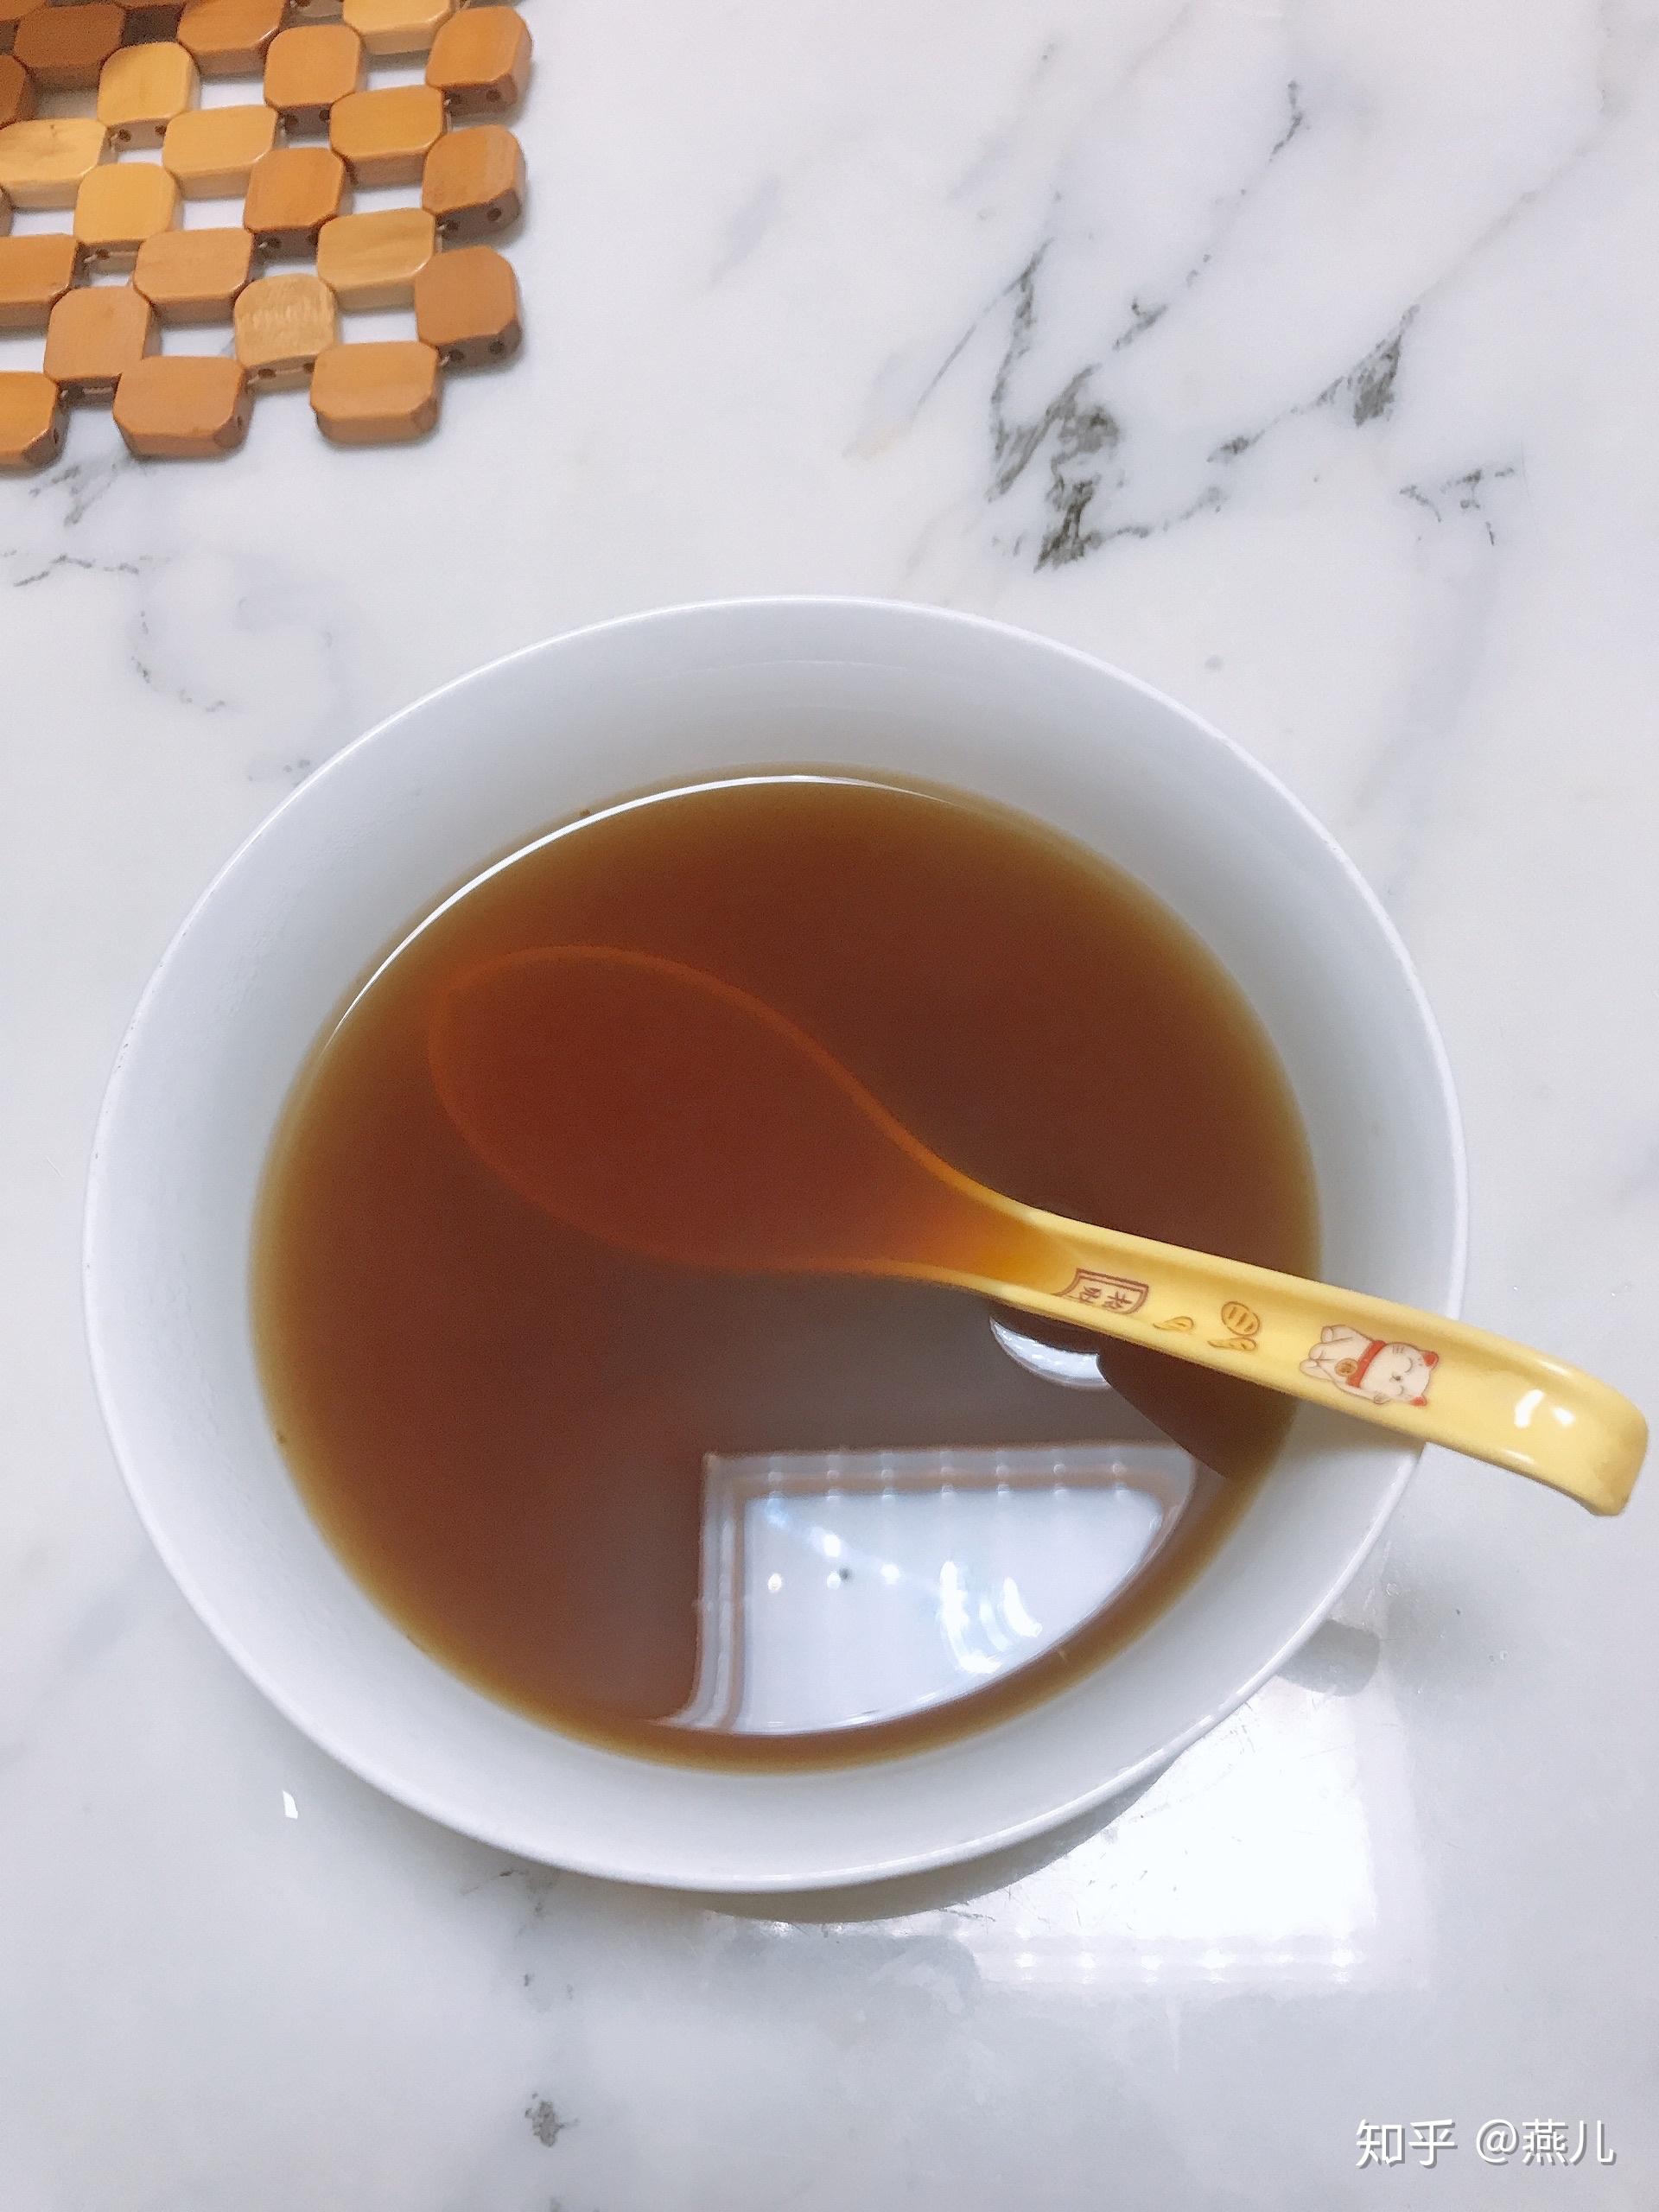 红糖姜茶图片 真实图片